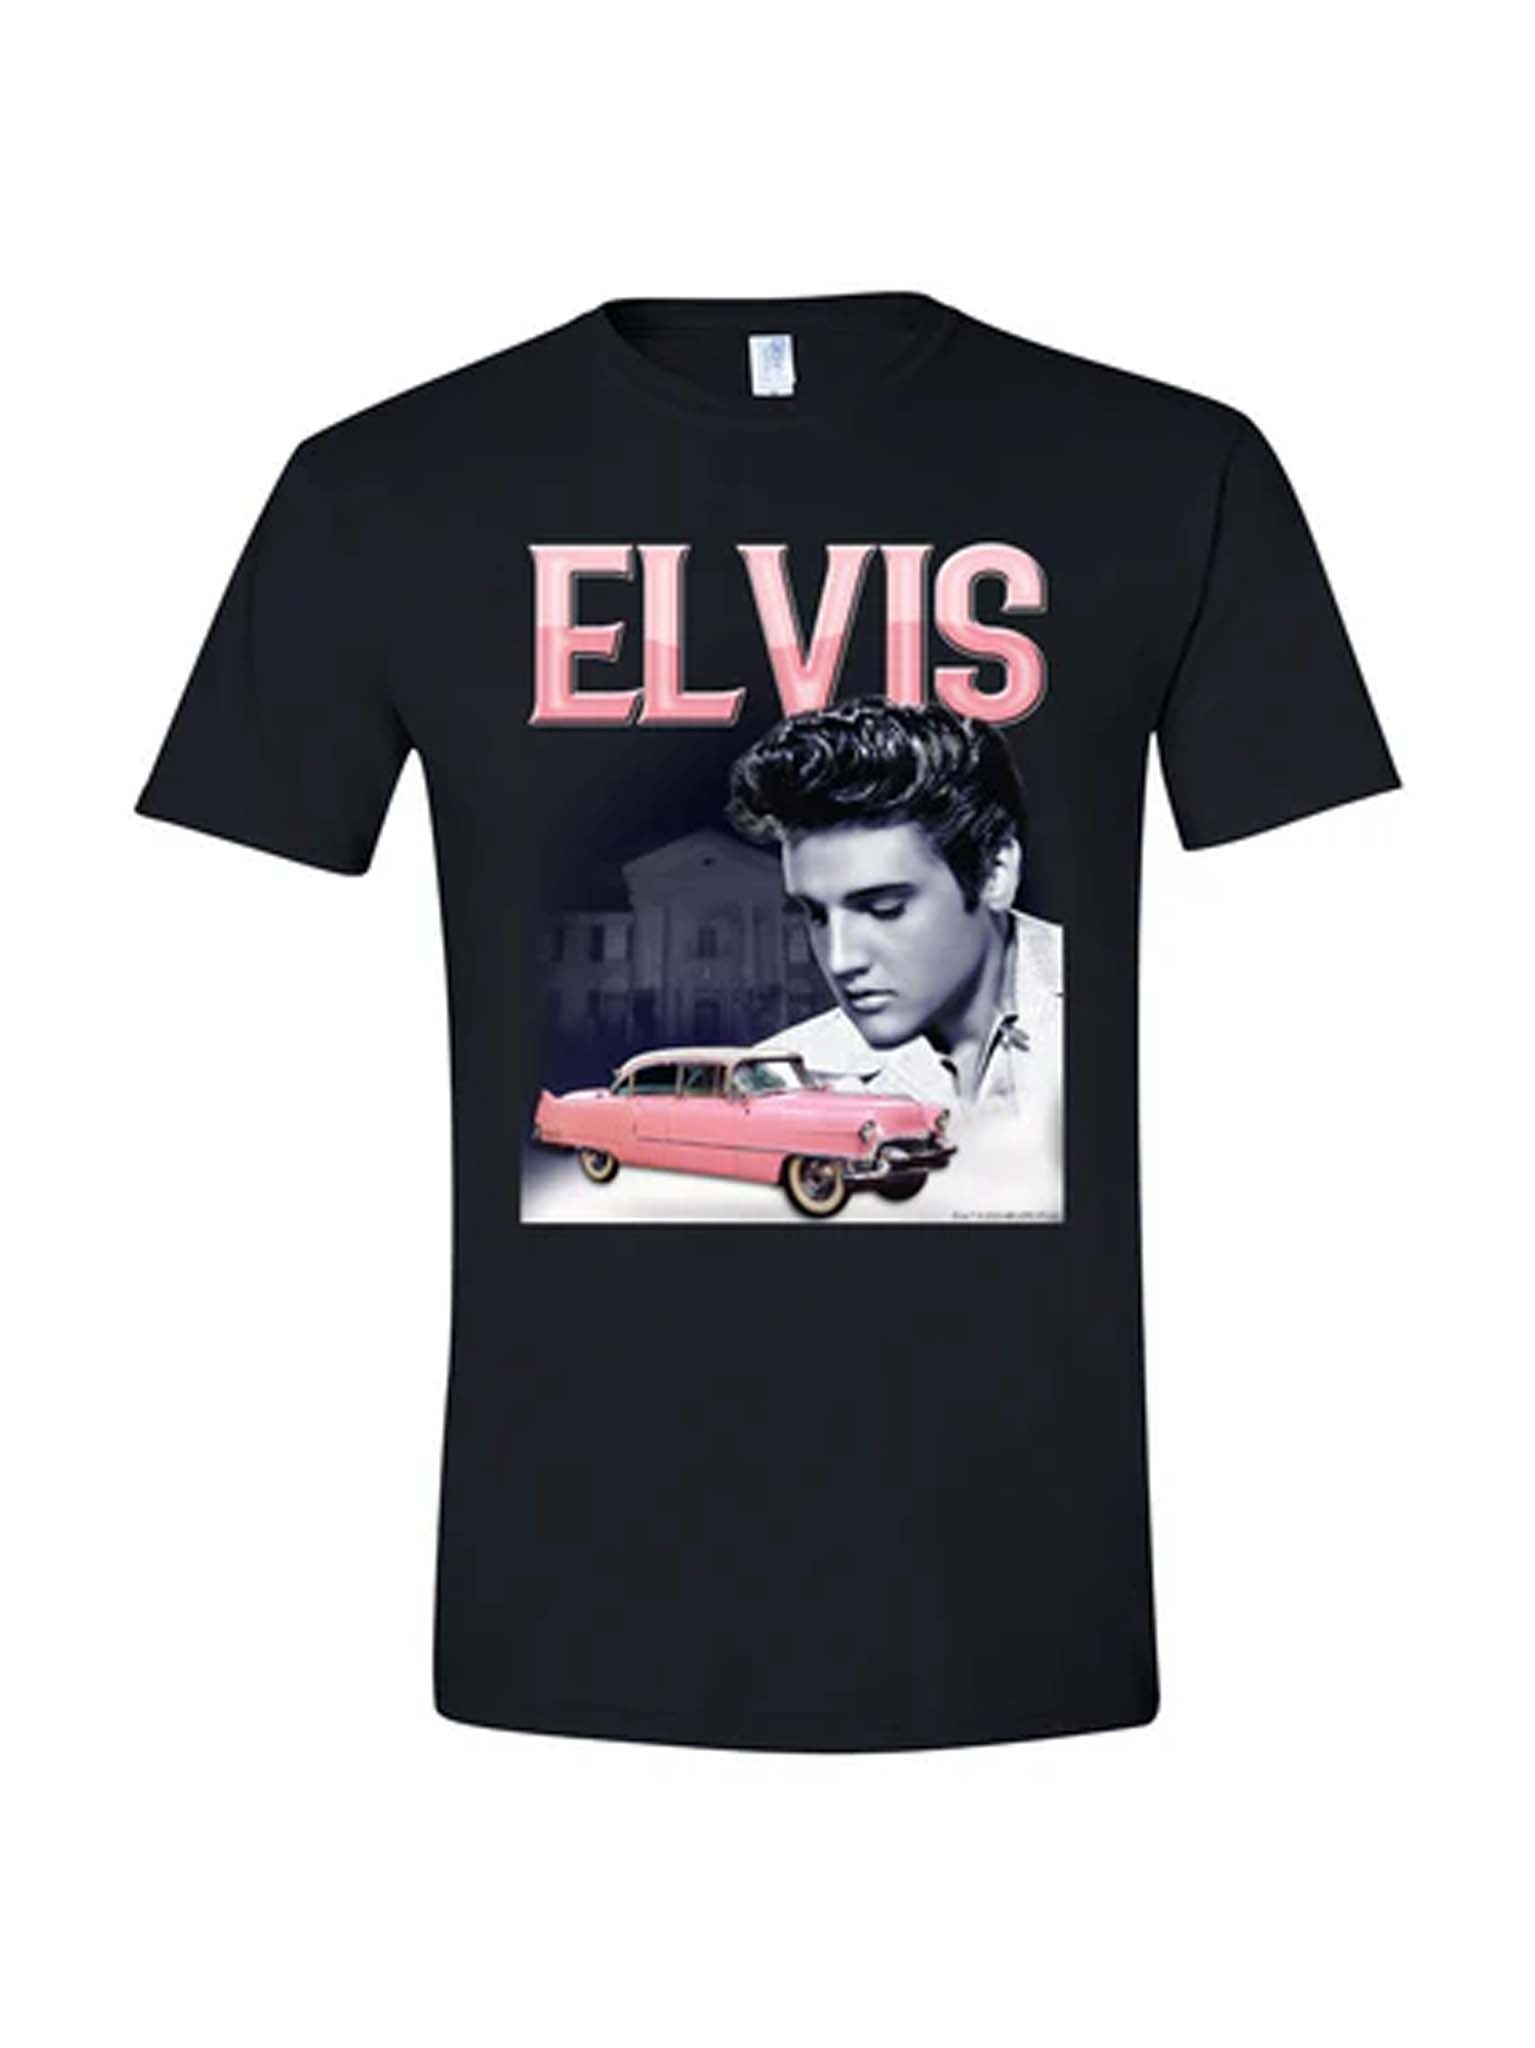 Elvis Pink Caddy Portrait T-Shirt